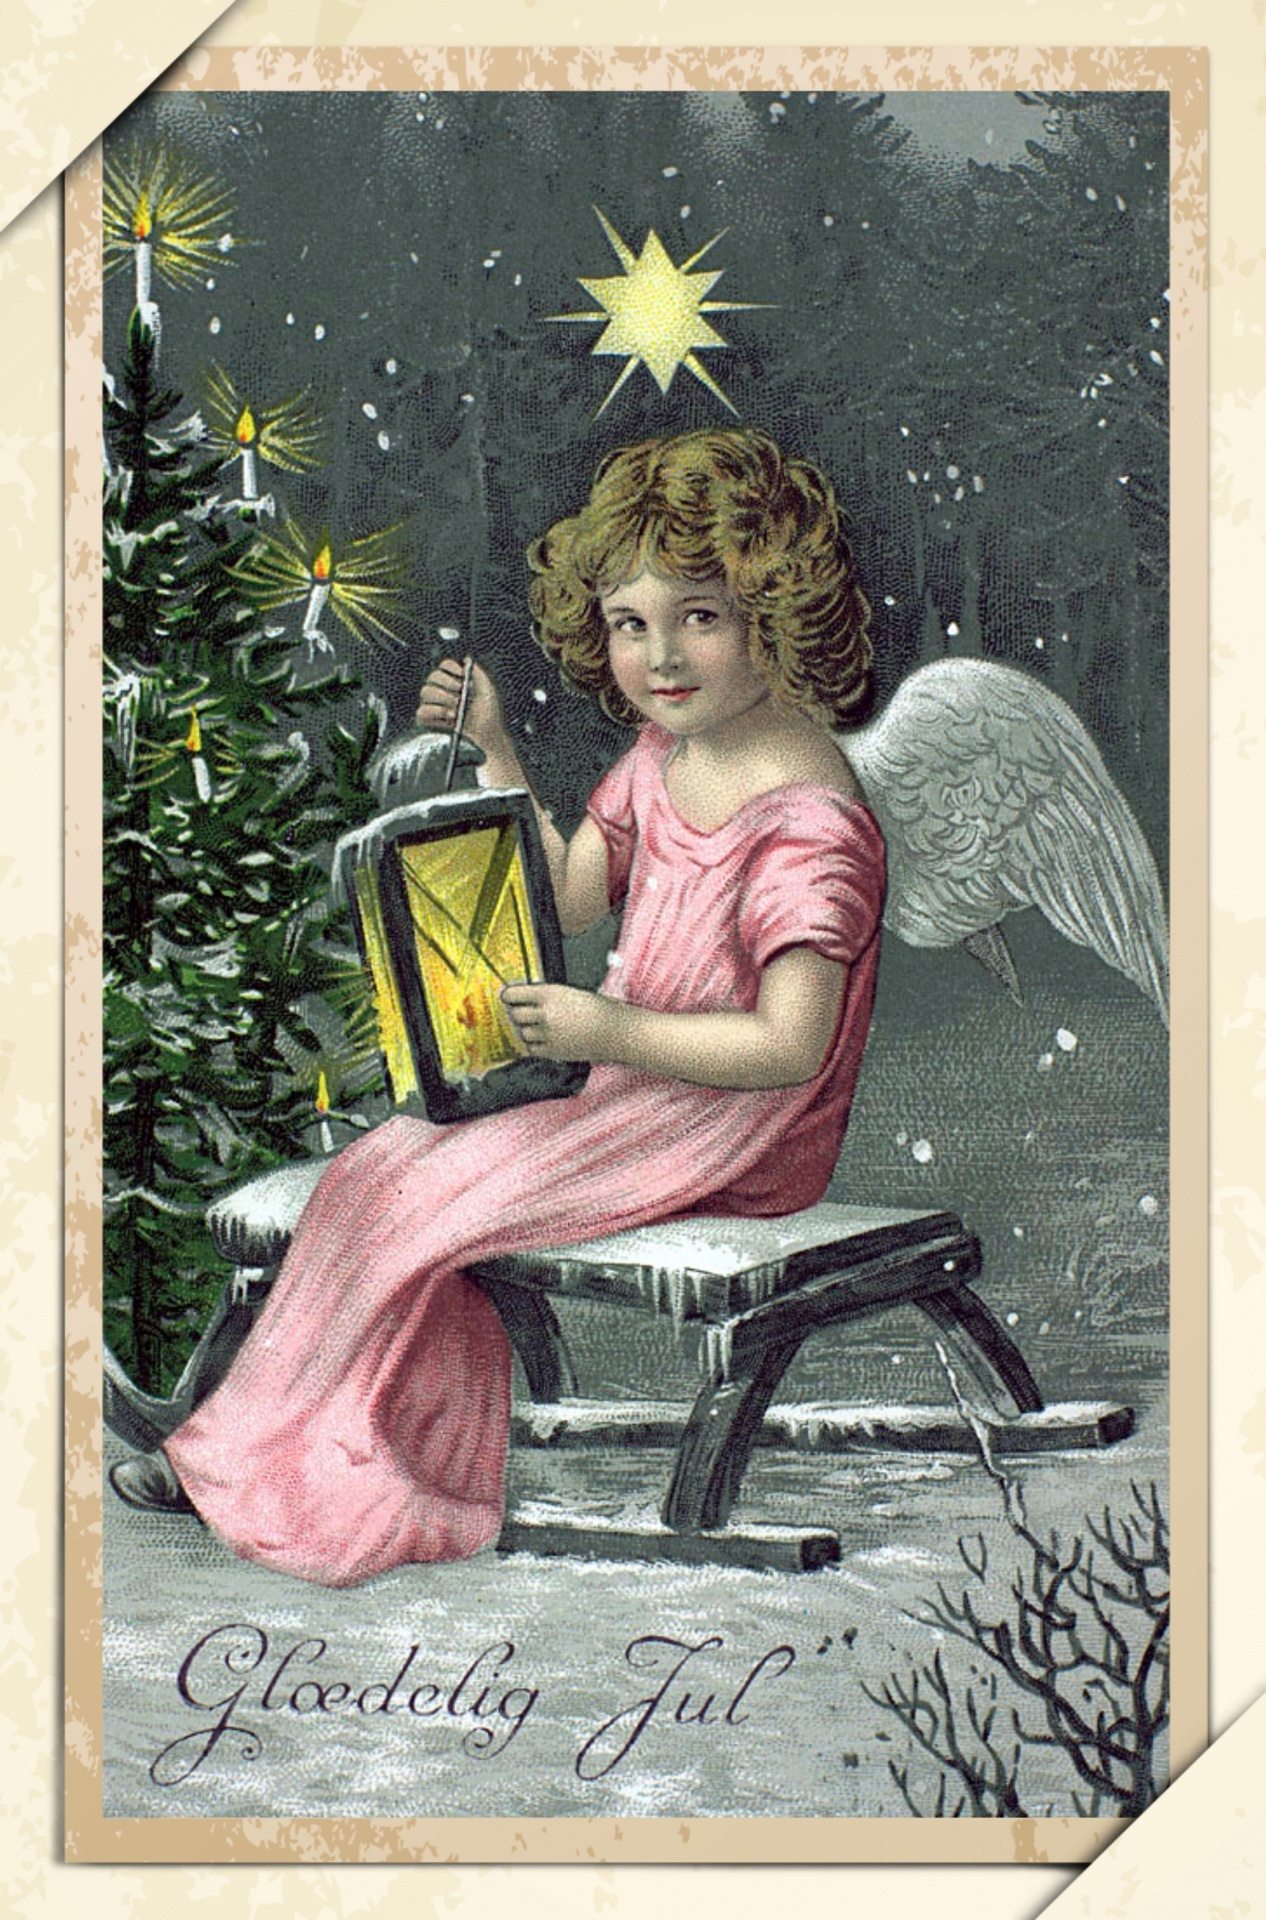 Carte postale d'art vintage de Noël Photo stock libre - Public Domain ...